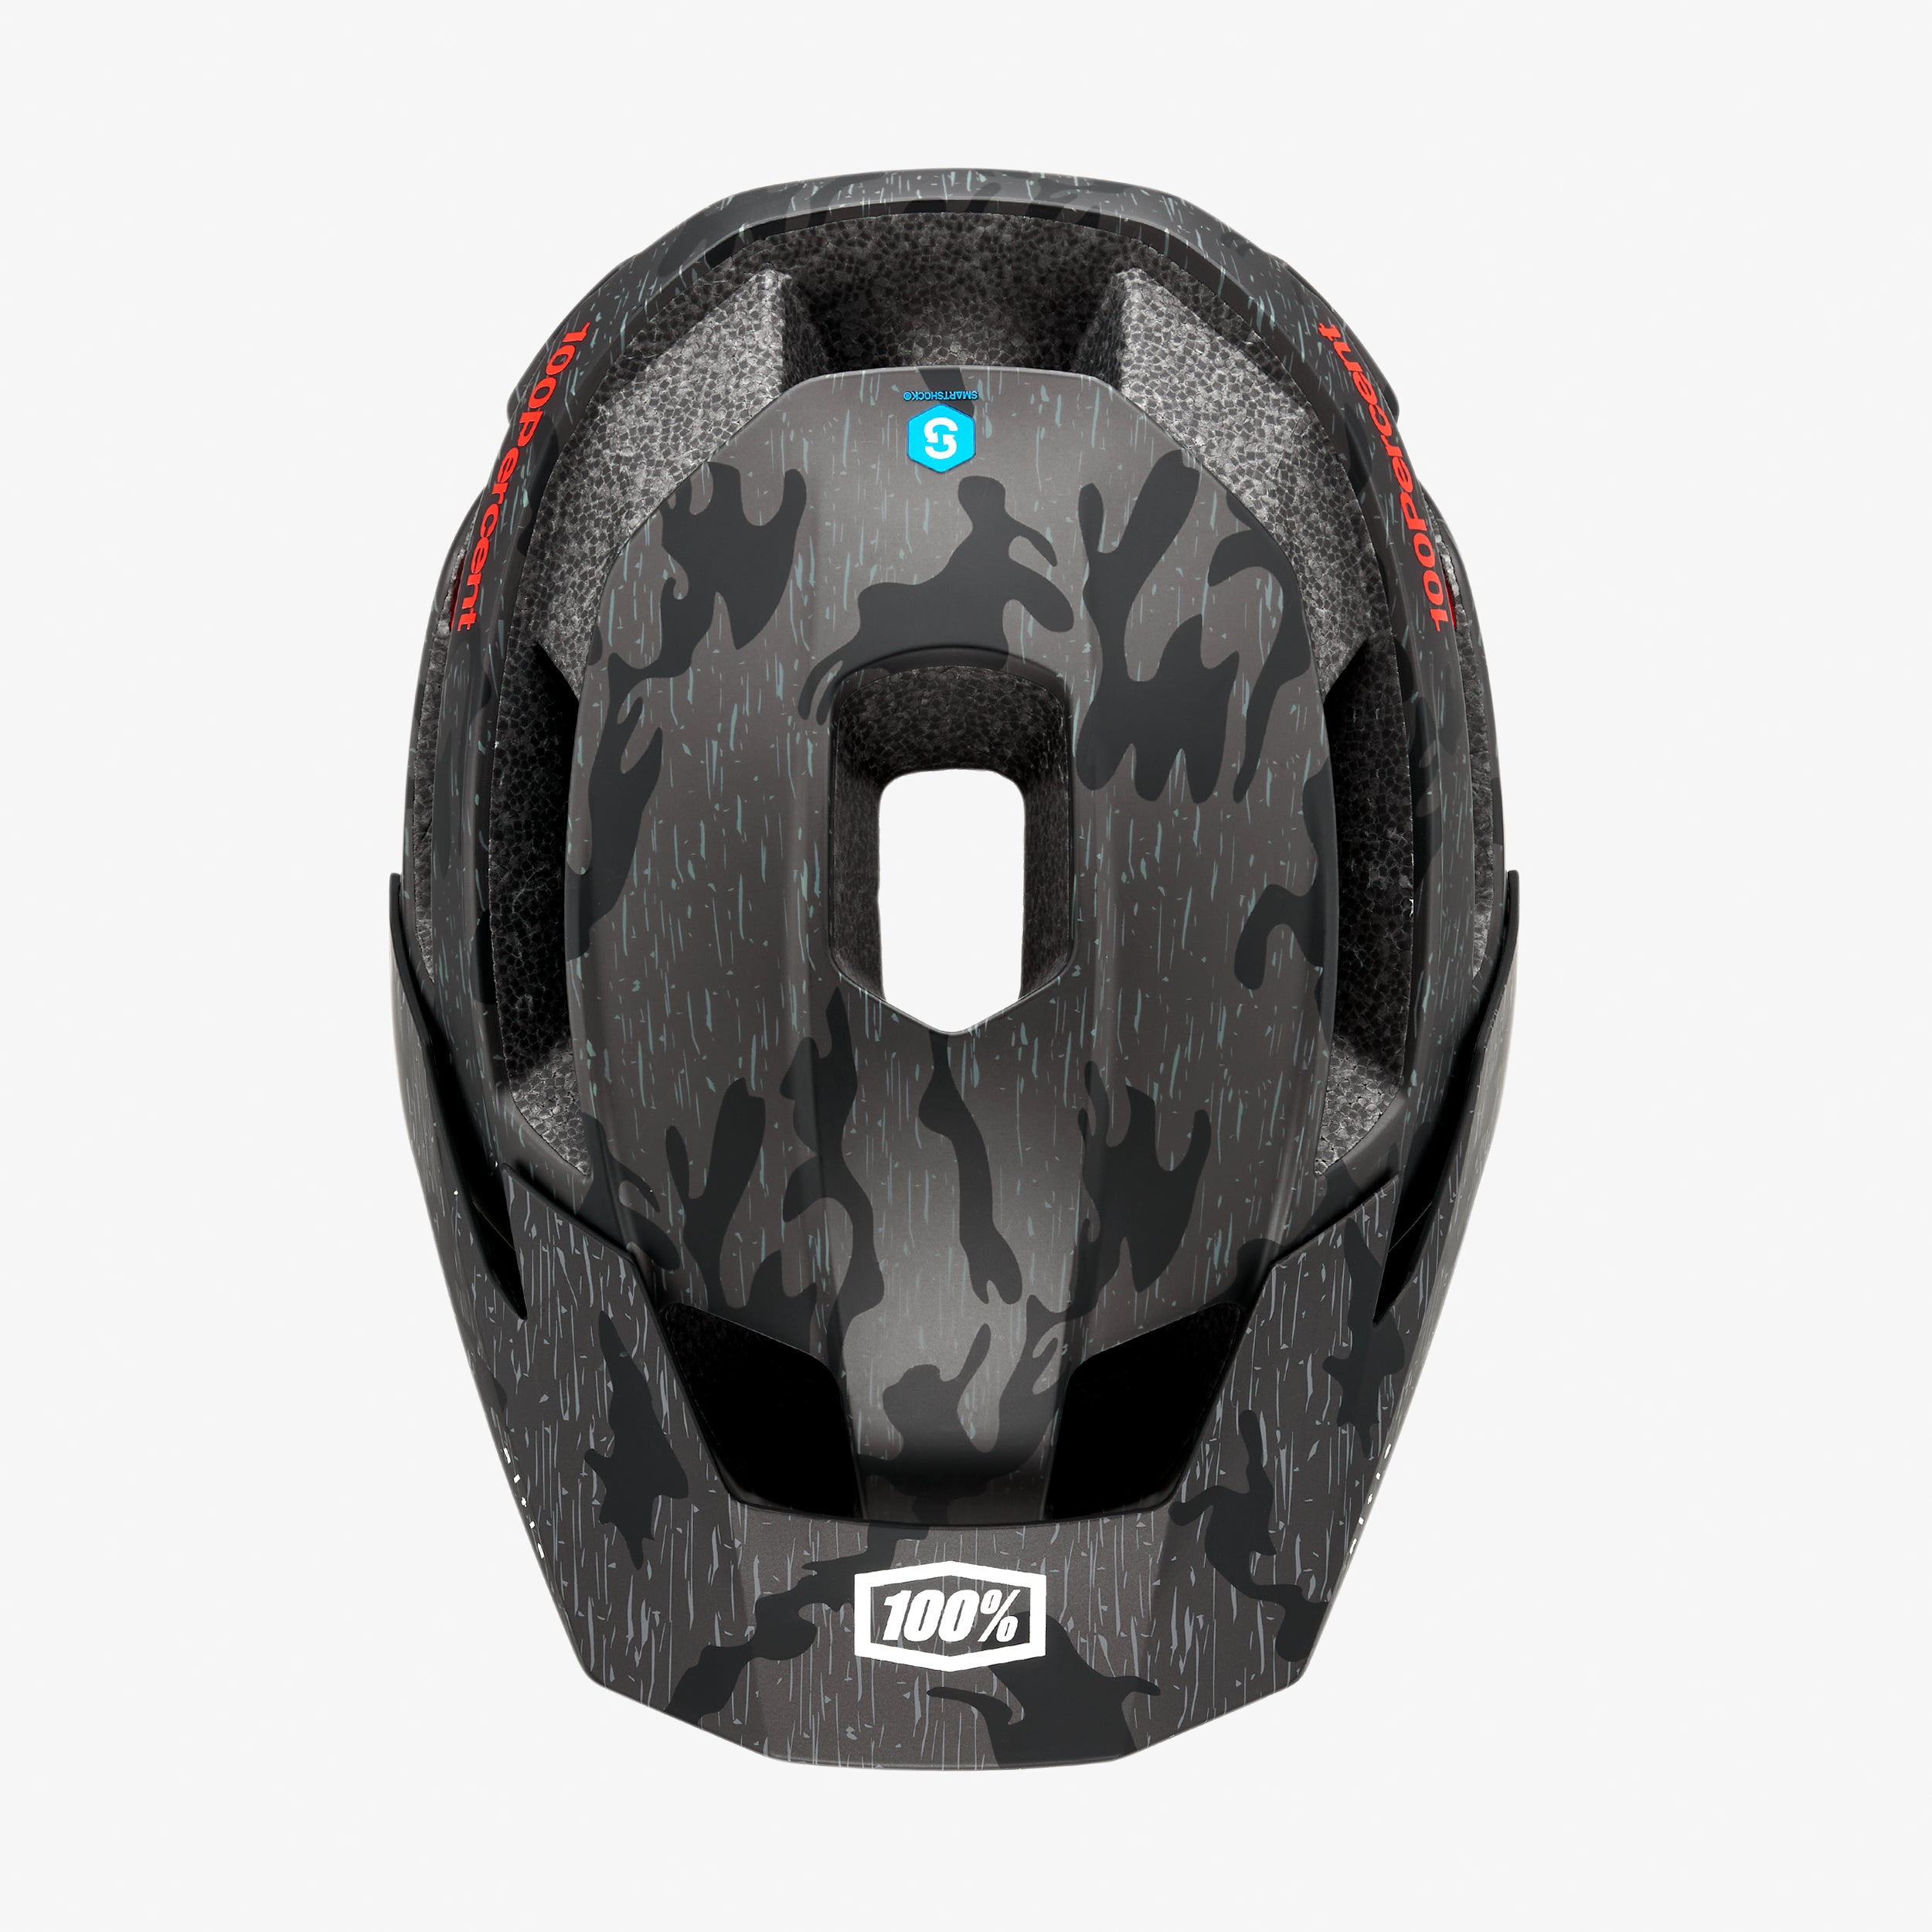 ALTIS Helmet Camo CPSC/CE - Secondary